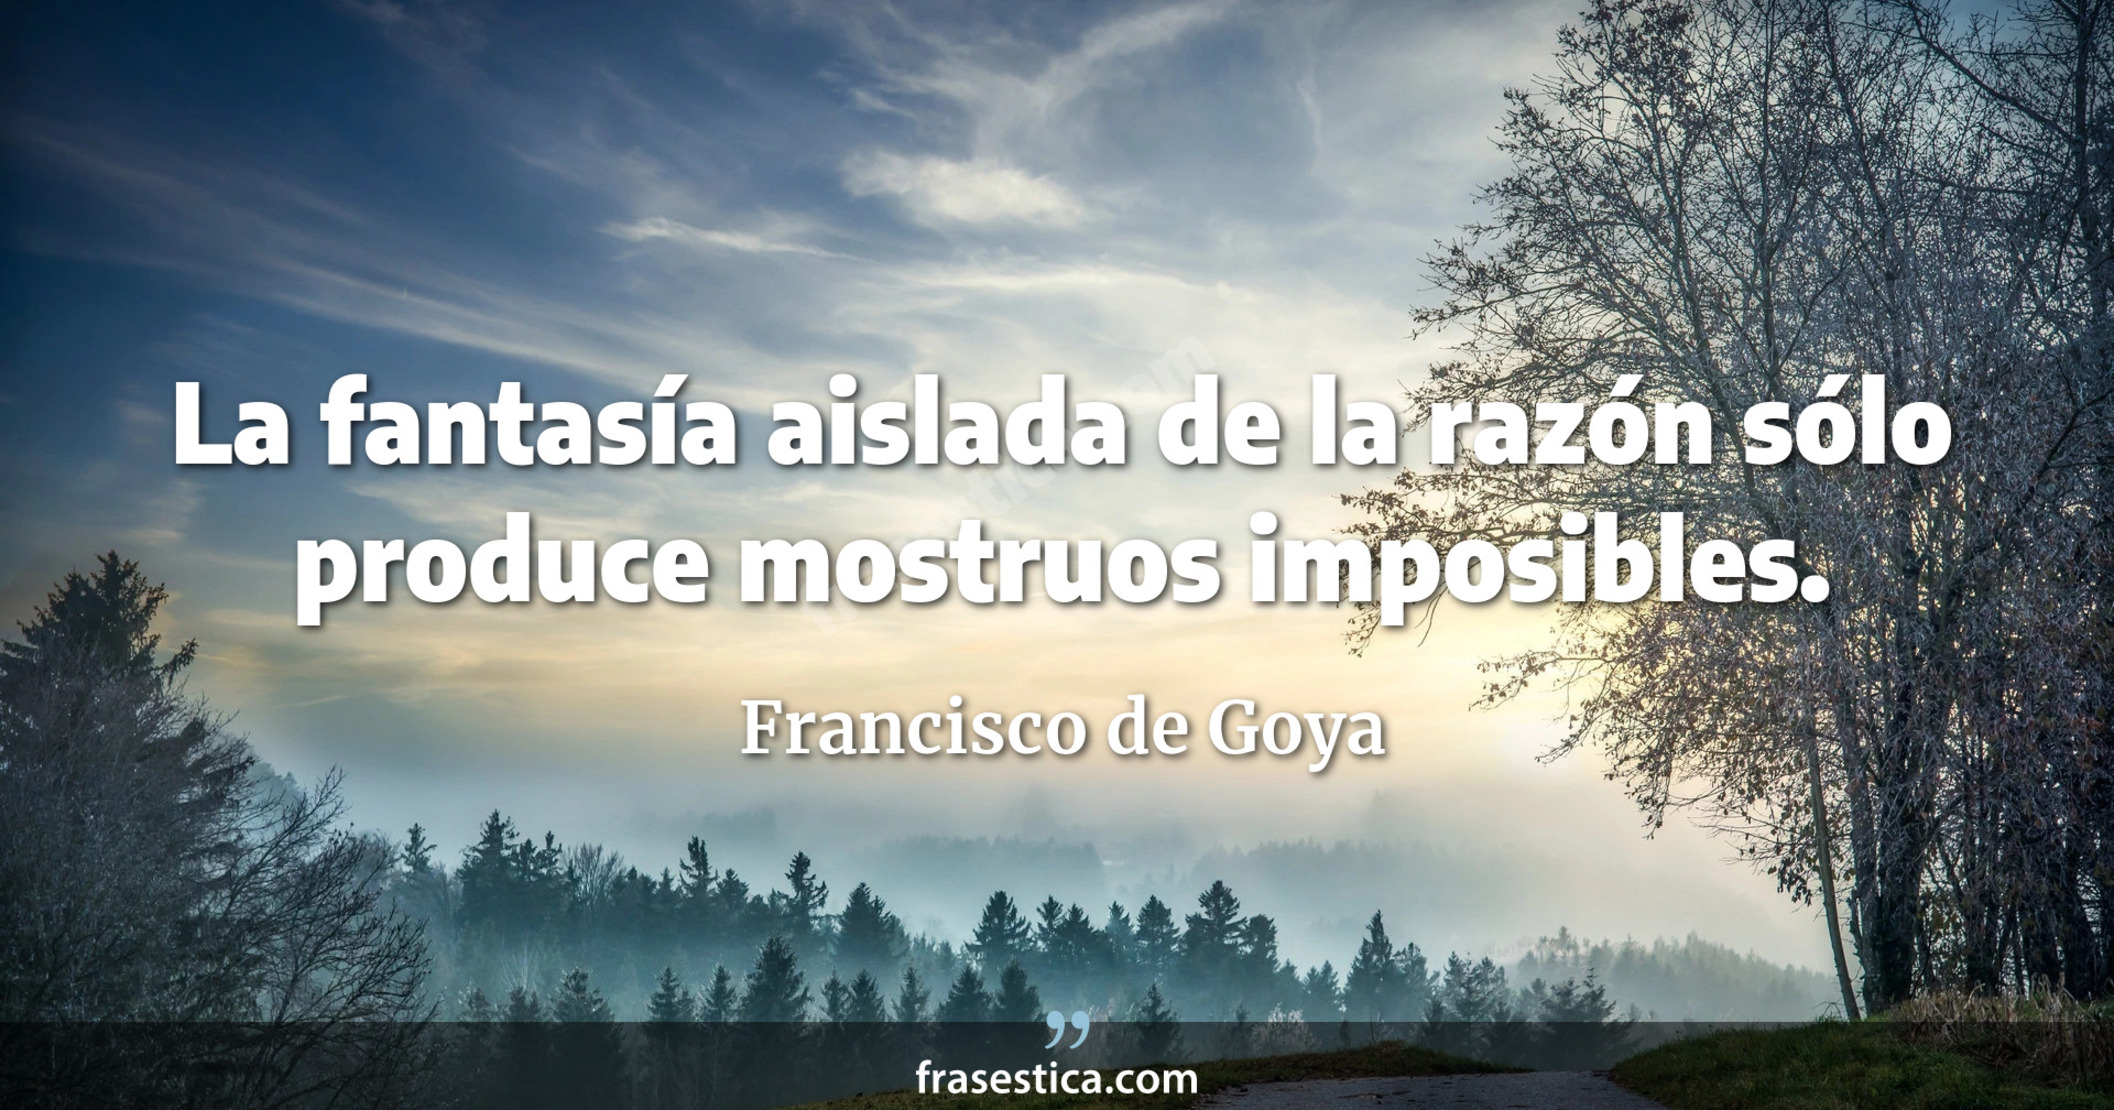 La fantasía aislada de la razón sólo produce mostruos imposibles. - Francisco de Goya